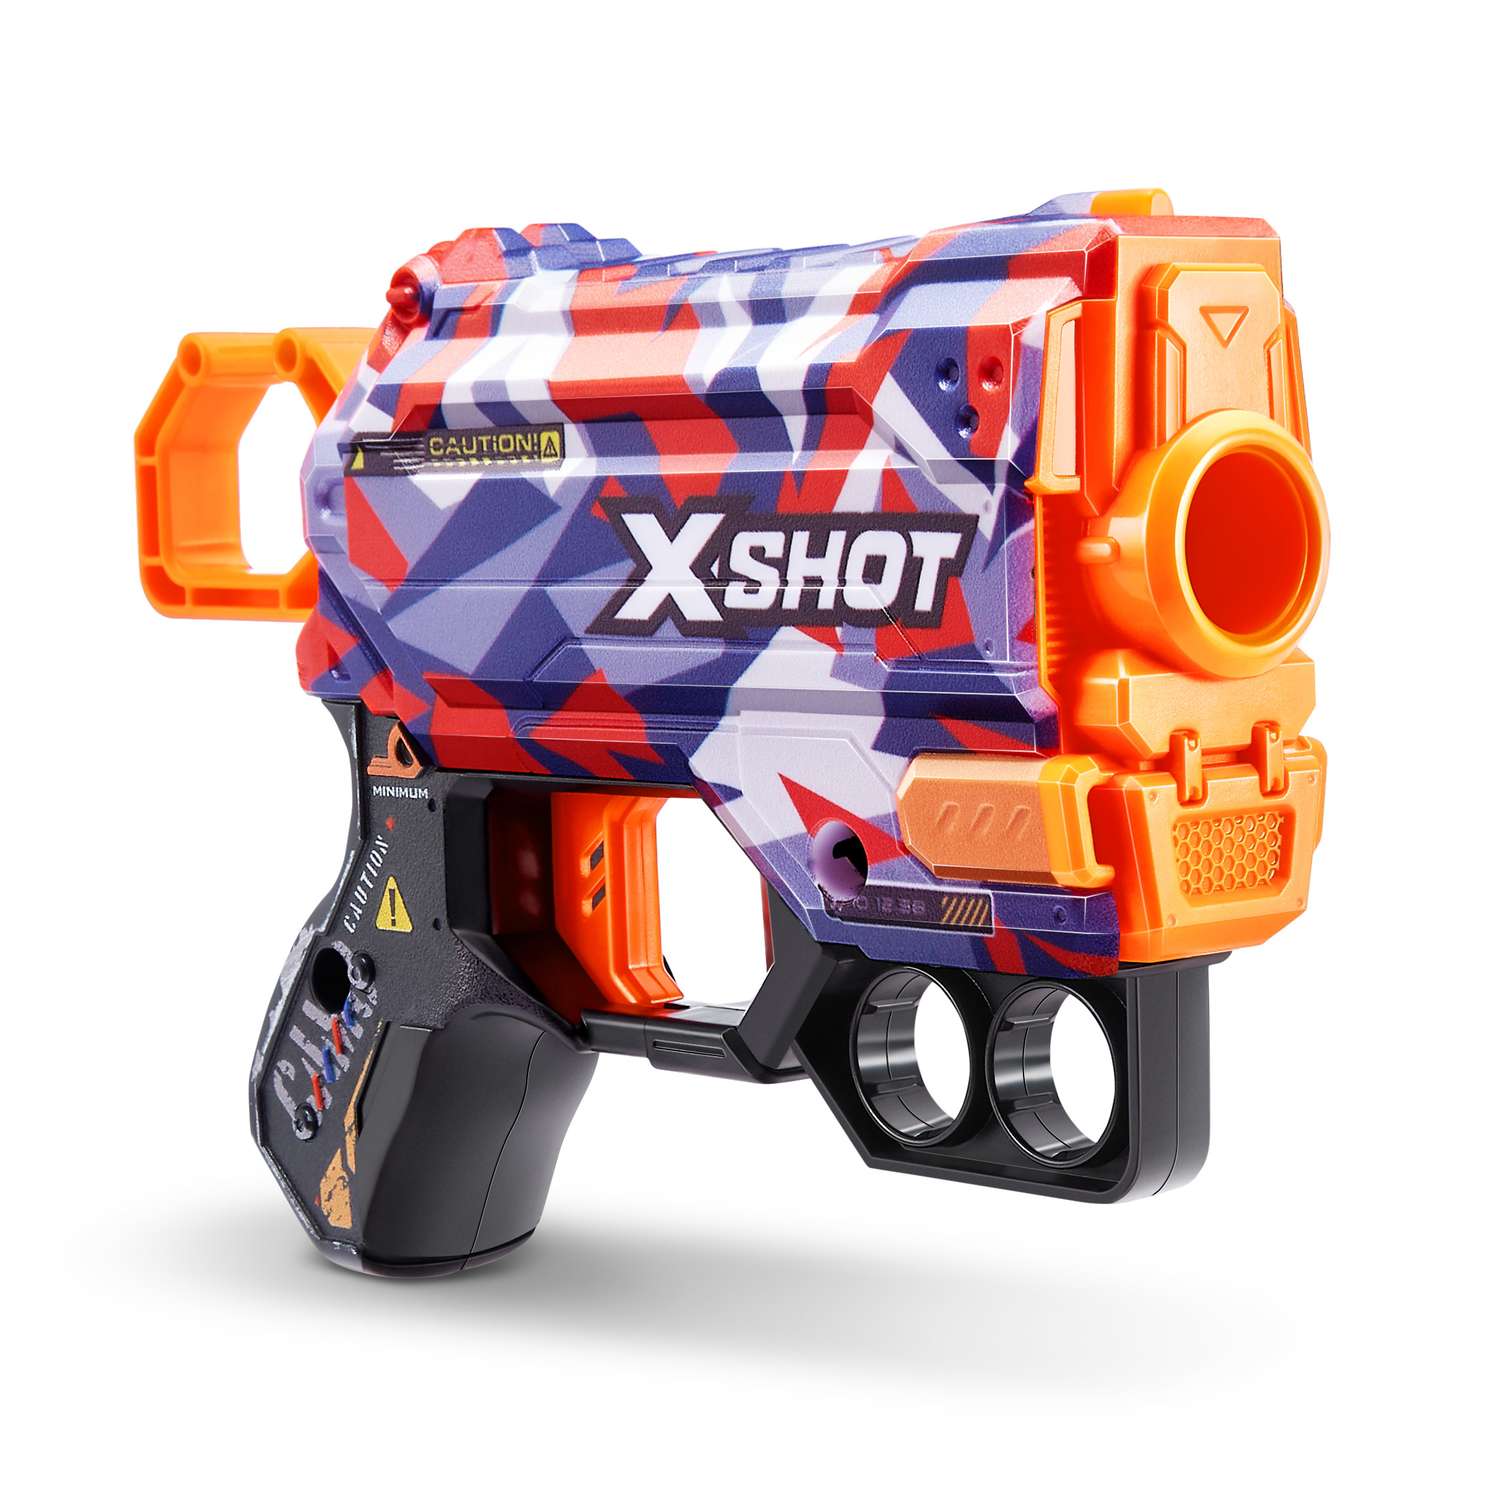 Набор для стрельбы X-SHOT  Скинс менейс в ассортименте 36515 - фото 5